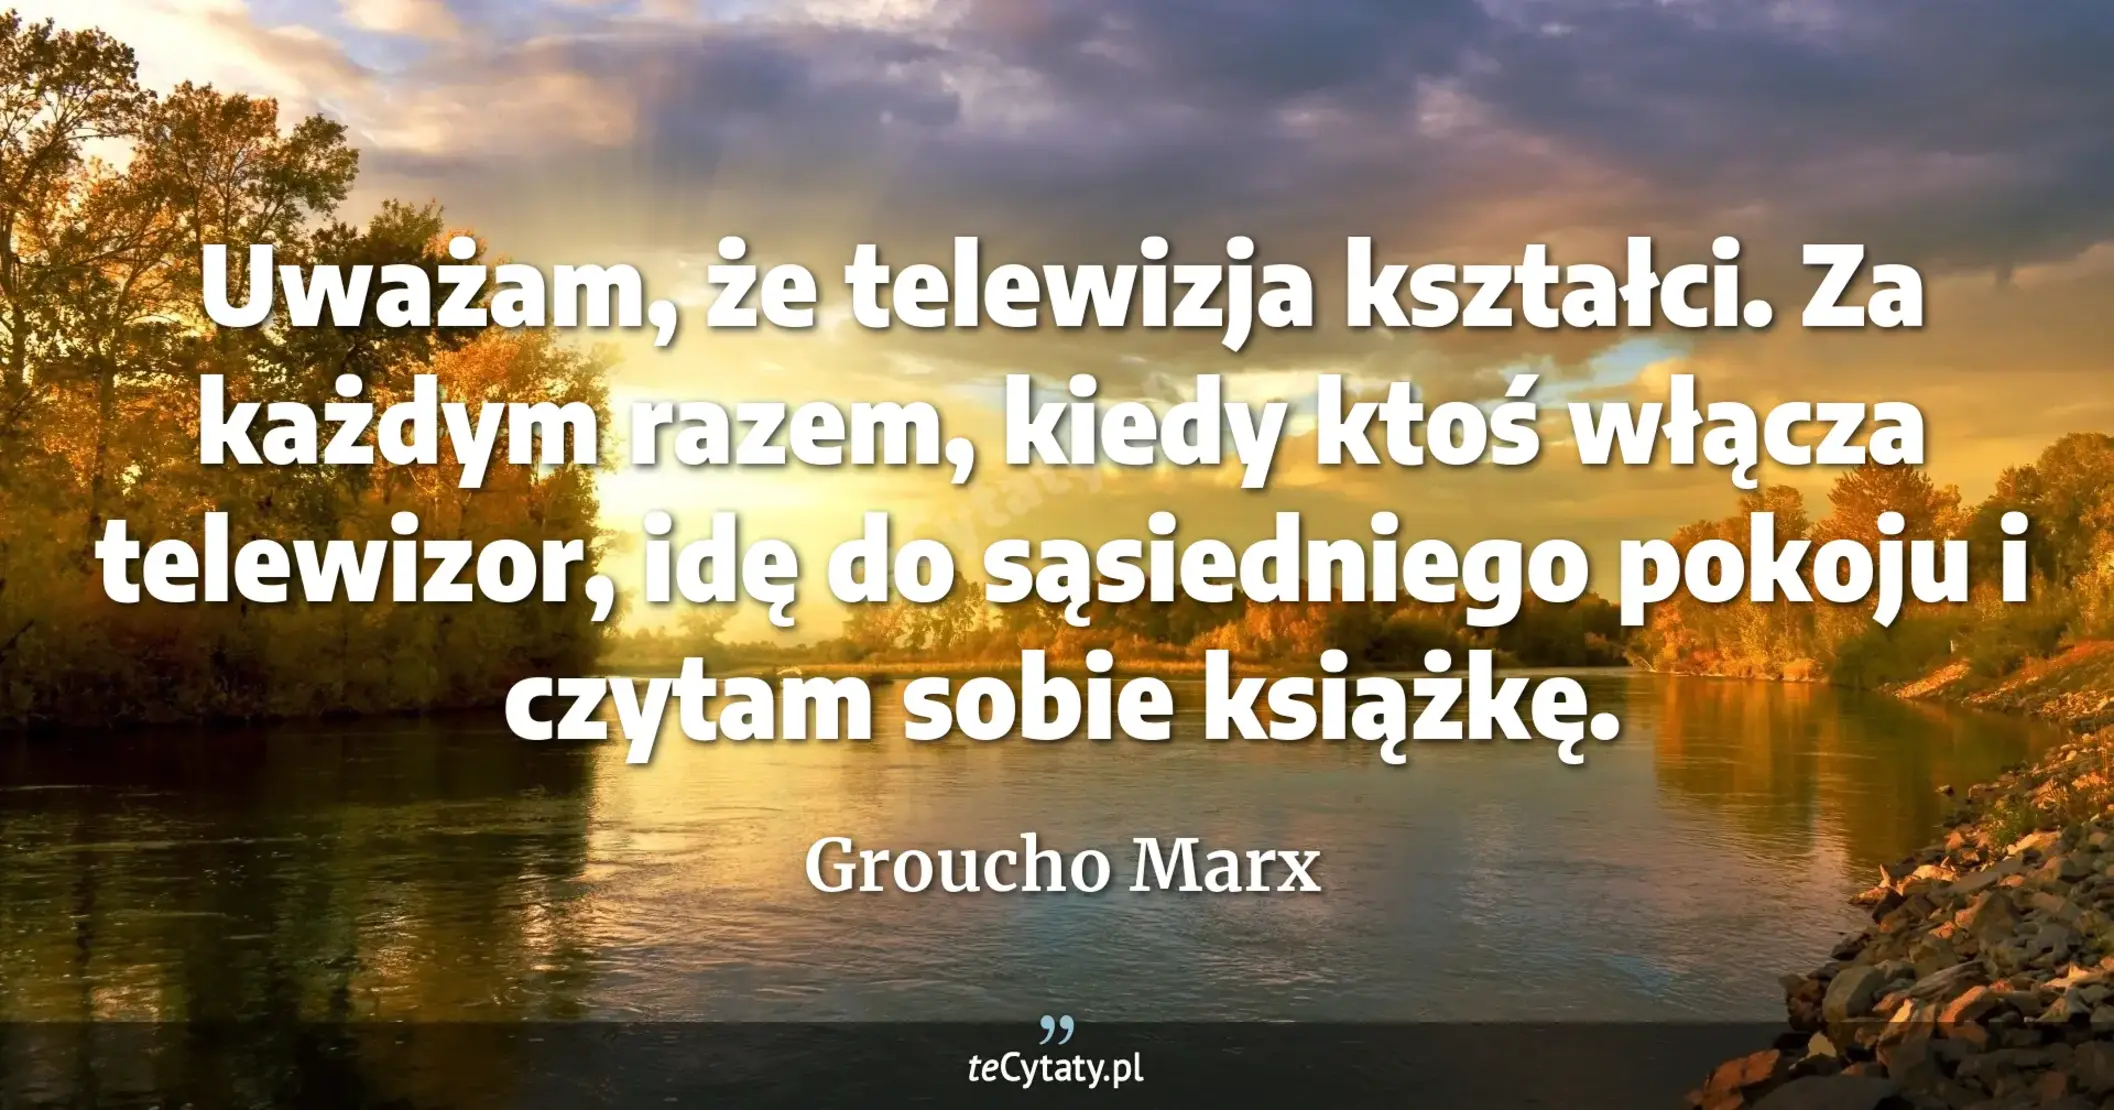 Uważam, że telewizja kształci. Za każdym razem, kiedy ktoś włącza telewizor, idę do sąsiedniego pokoju i czytam sobie książkę. - Groucho Marx